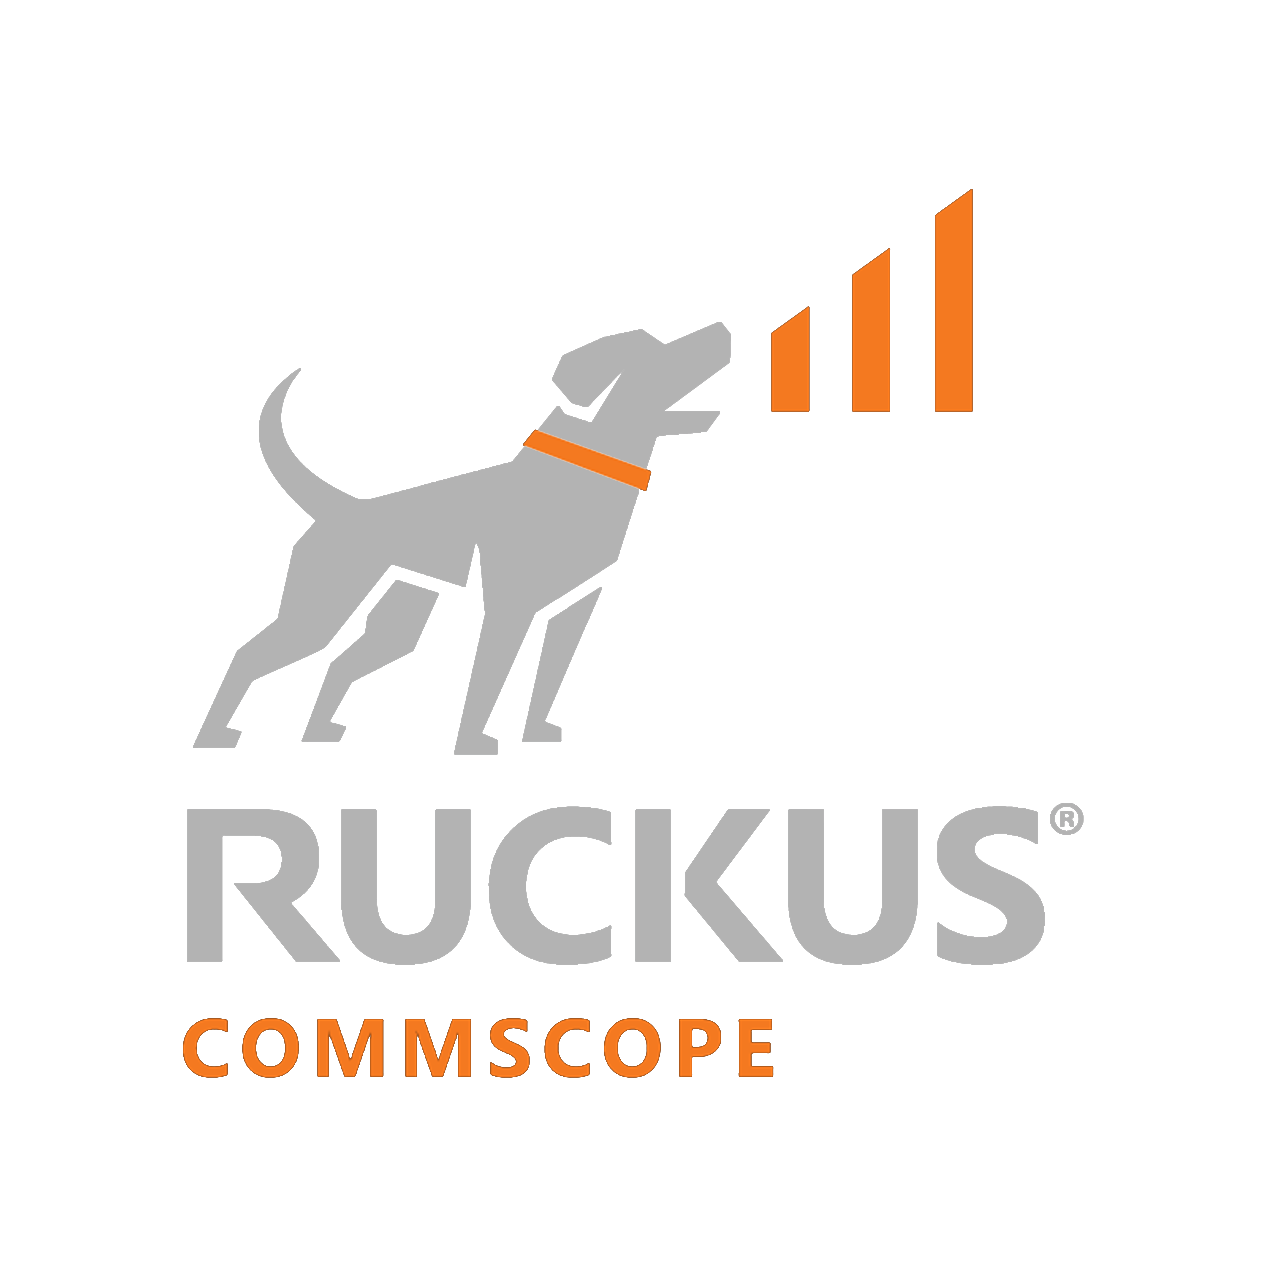 Ruckus Commscope